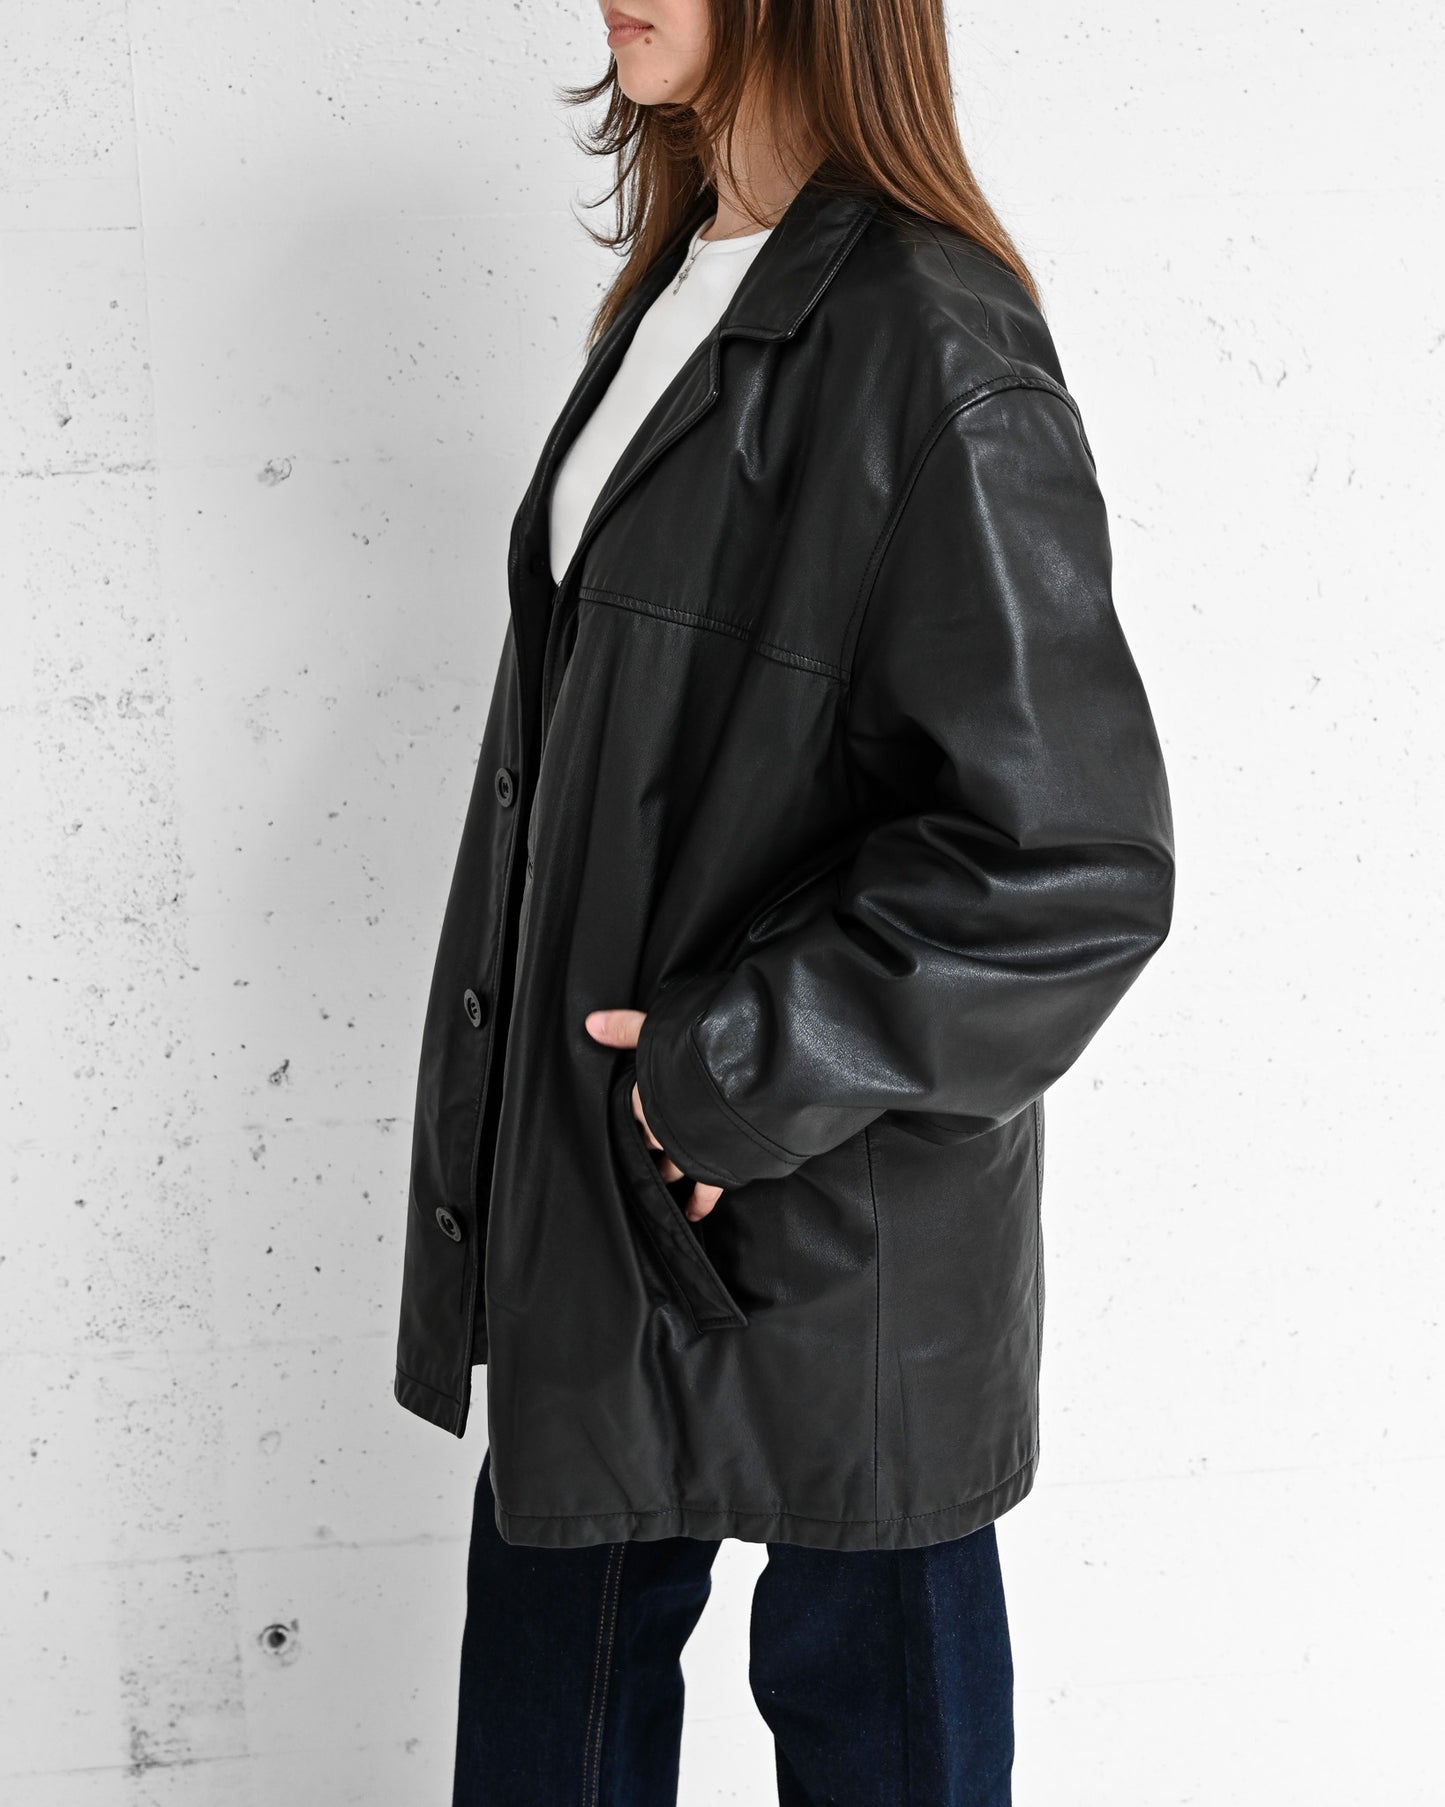 Black Paneled Leather Jacket (L)